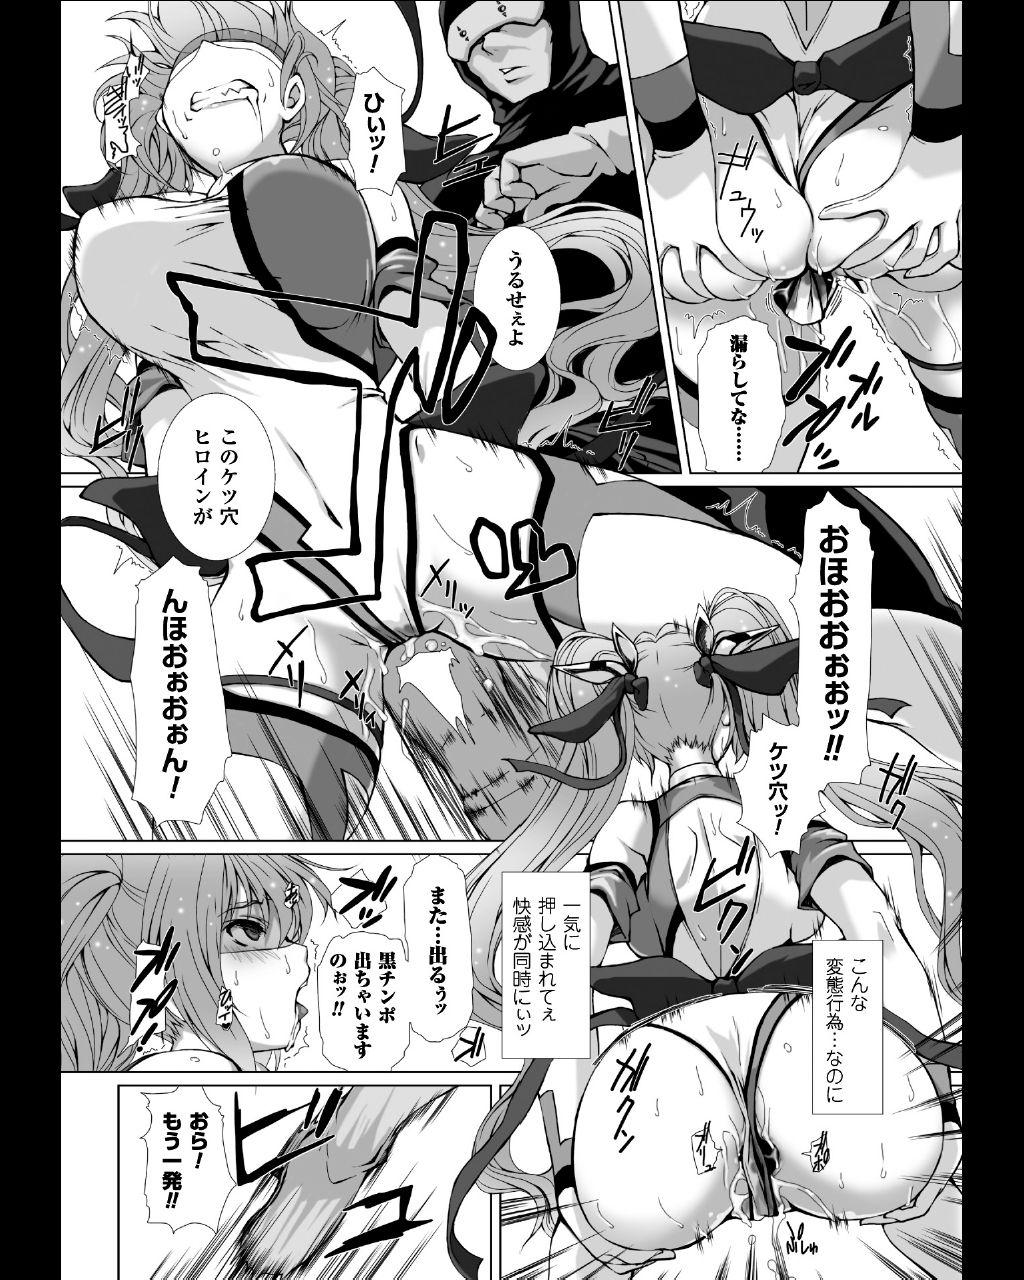 Seigi no Heroine Kangoku File Vol. 11 18